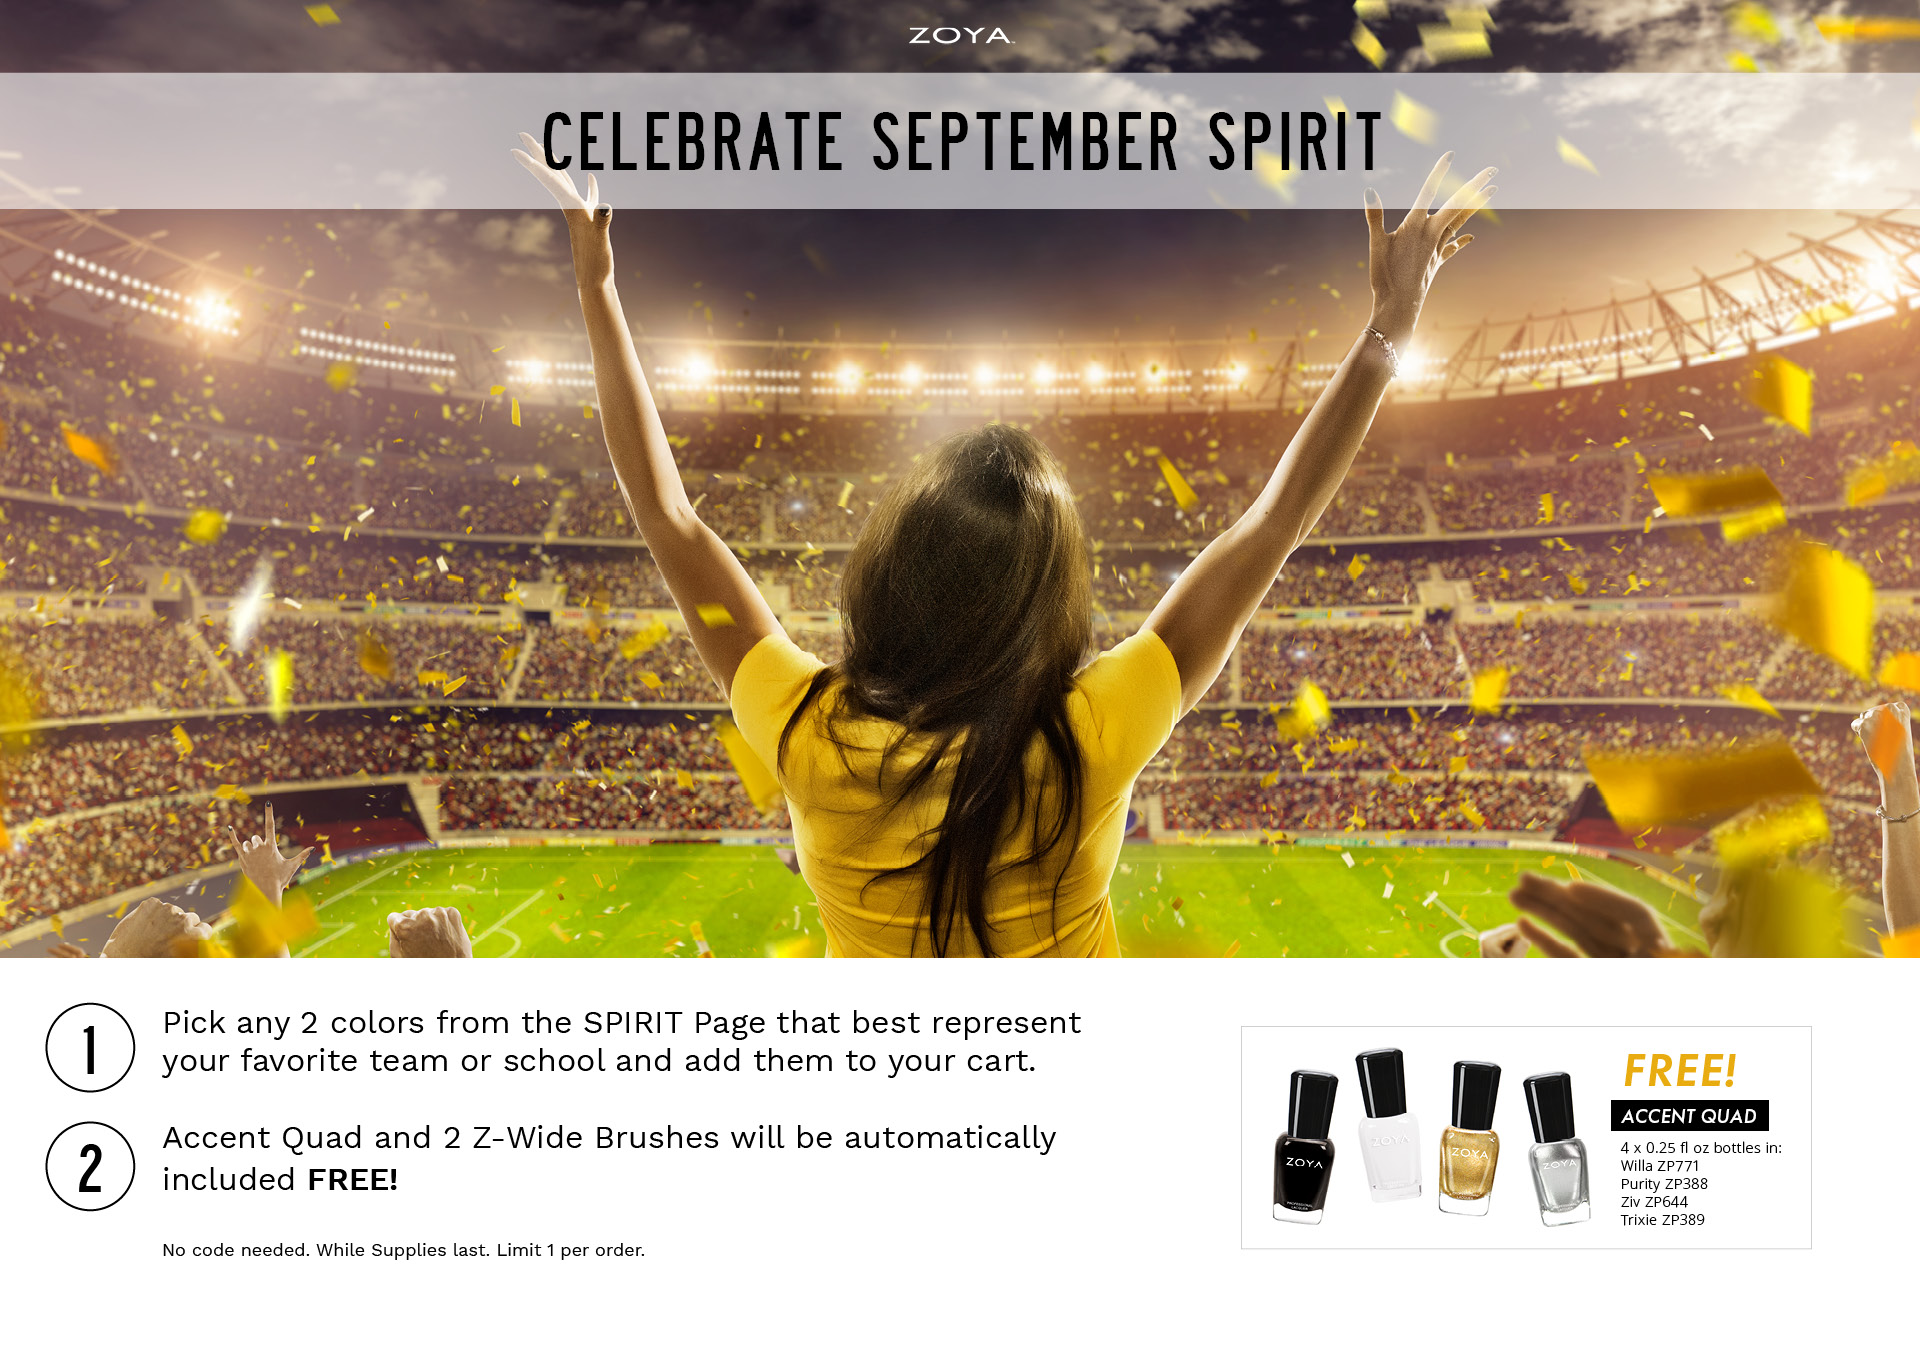 September Spirit promotion choose 2 colors